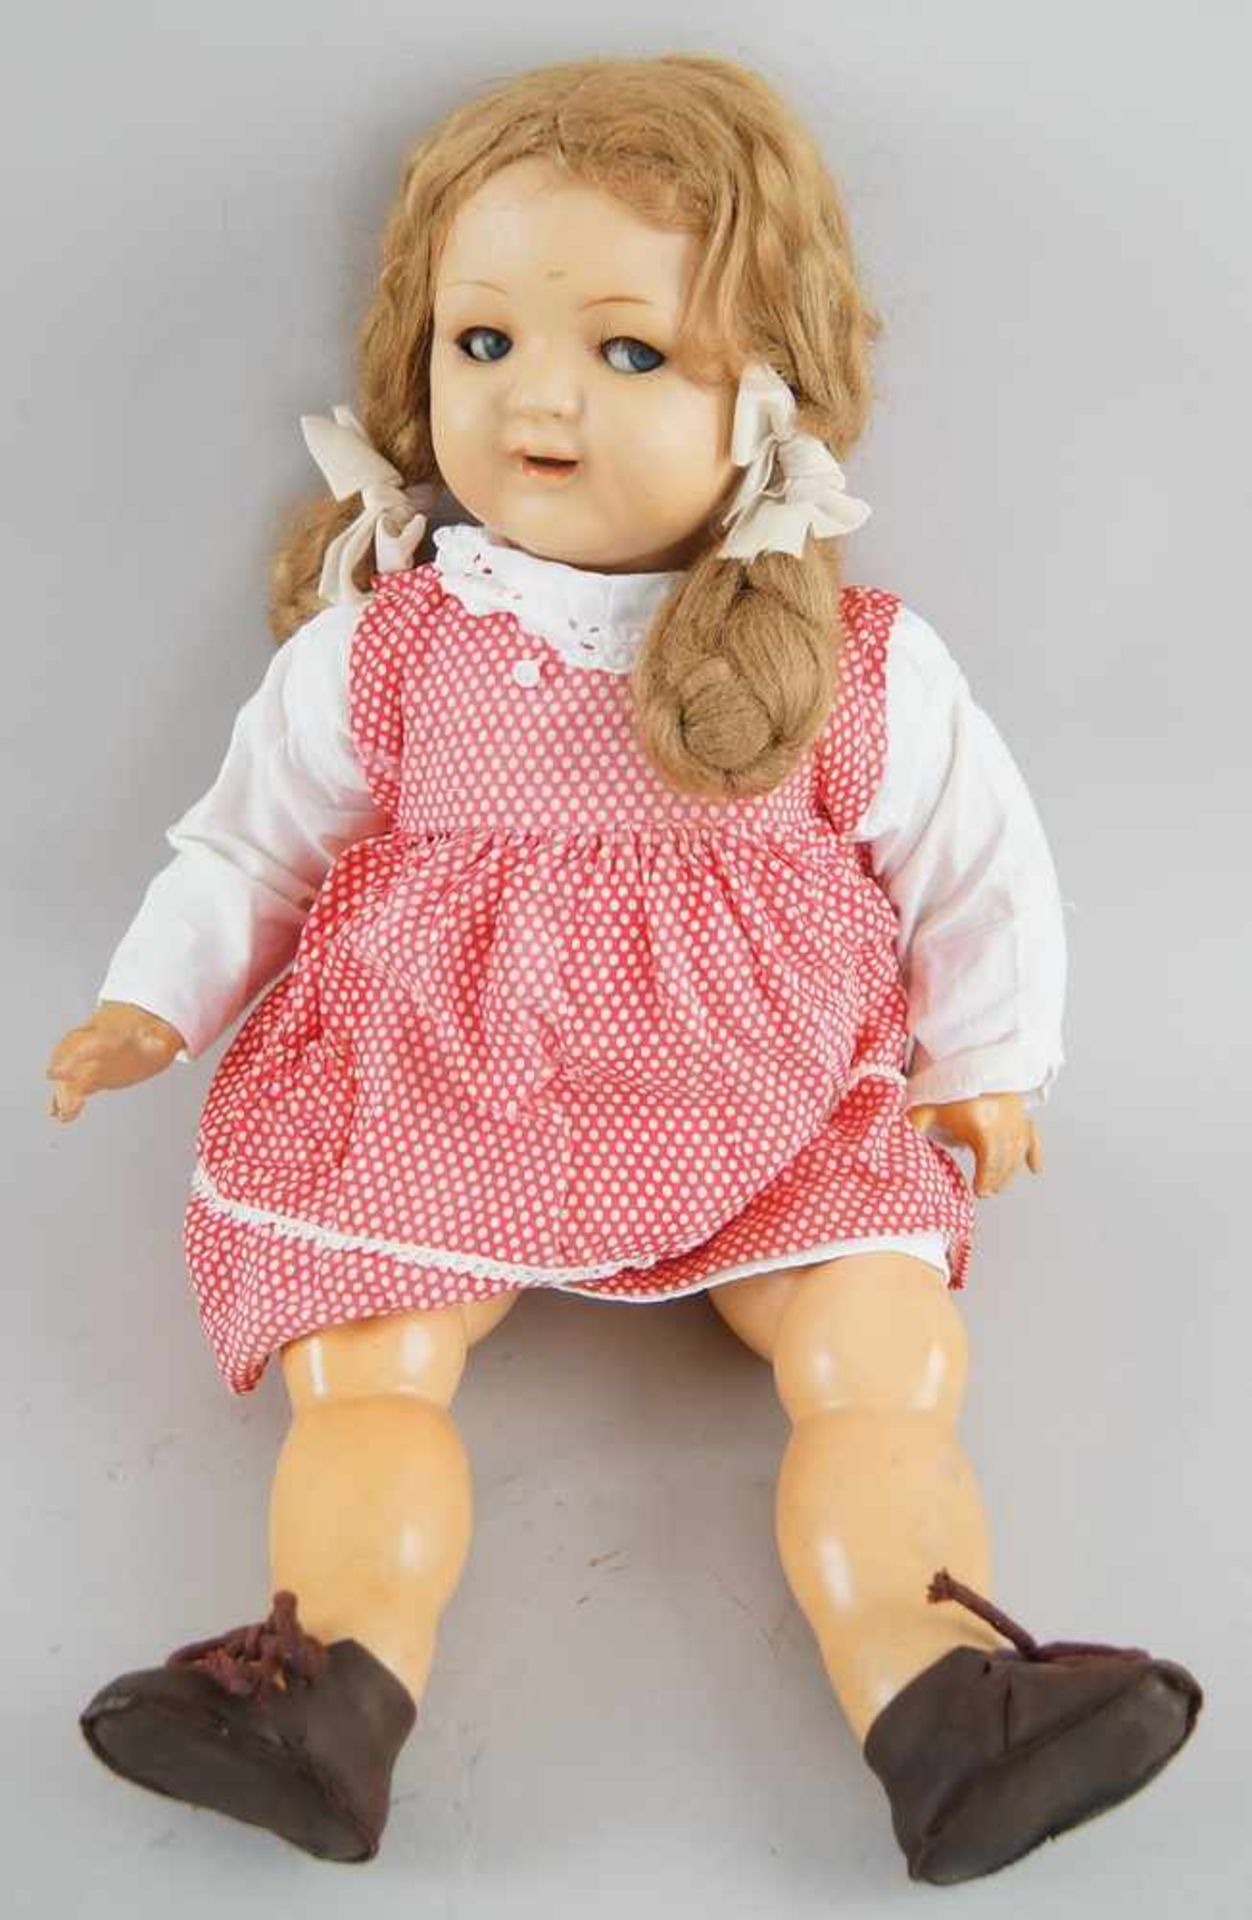 Puppe, wohl K&R, Massekopf, rot gepunktetes Kleid, um 1930, bespielt, 54 cm- - -24.00 % buyer's - Bild 3 aus 5